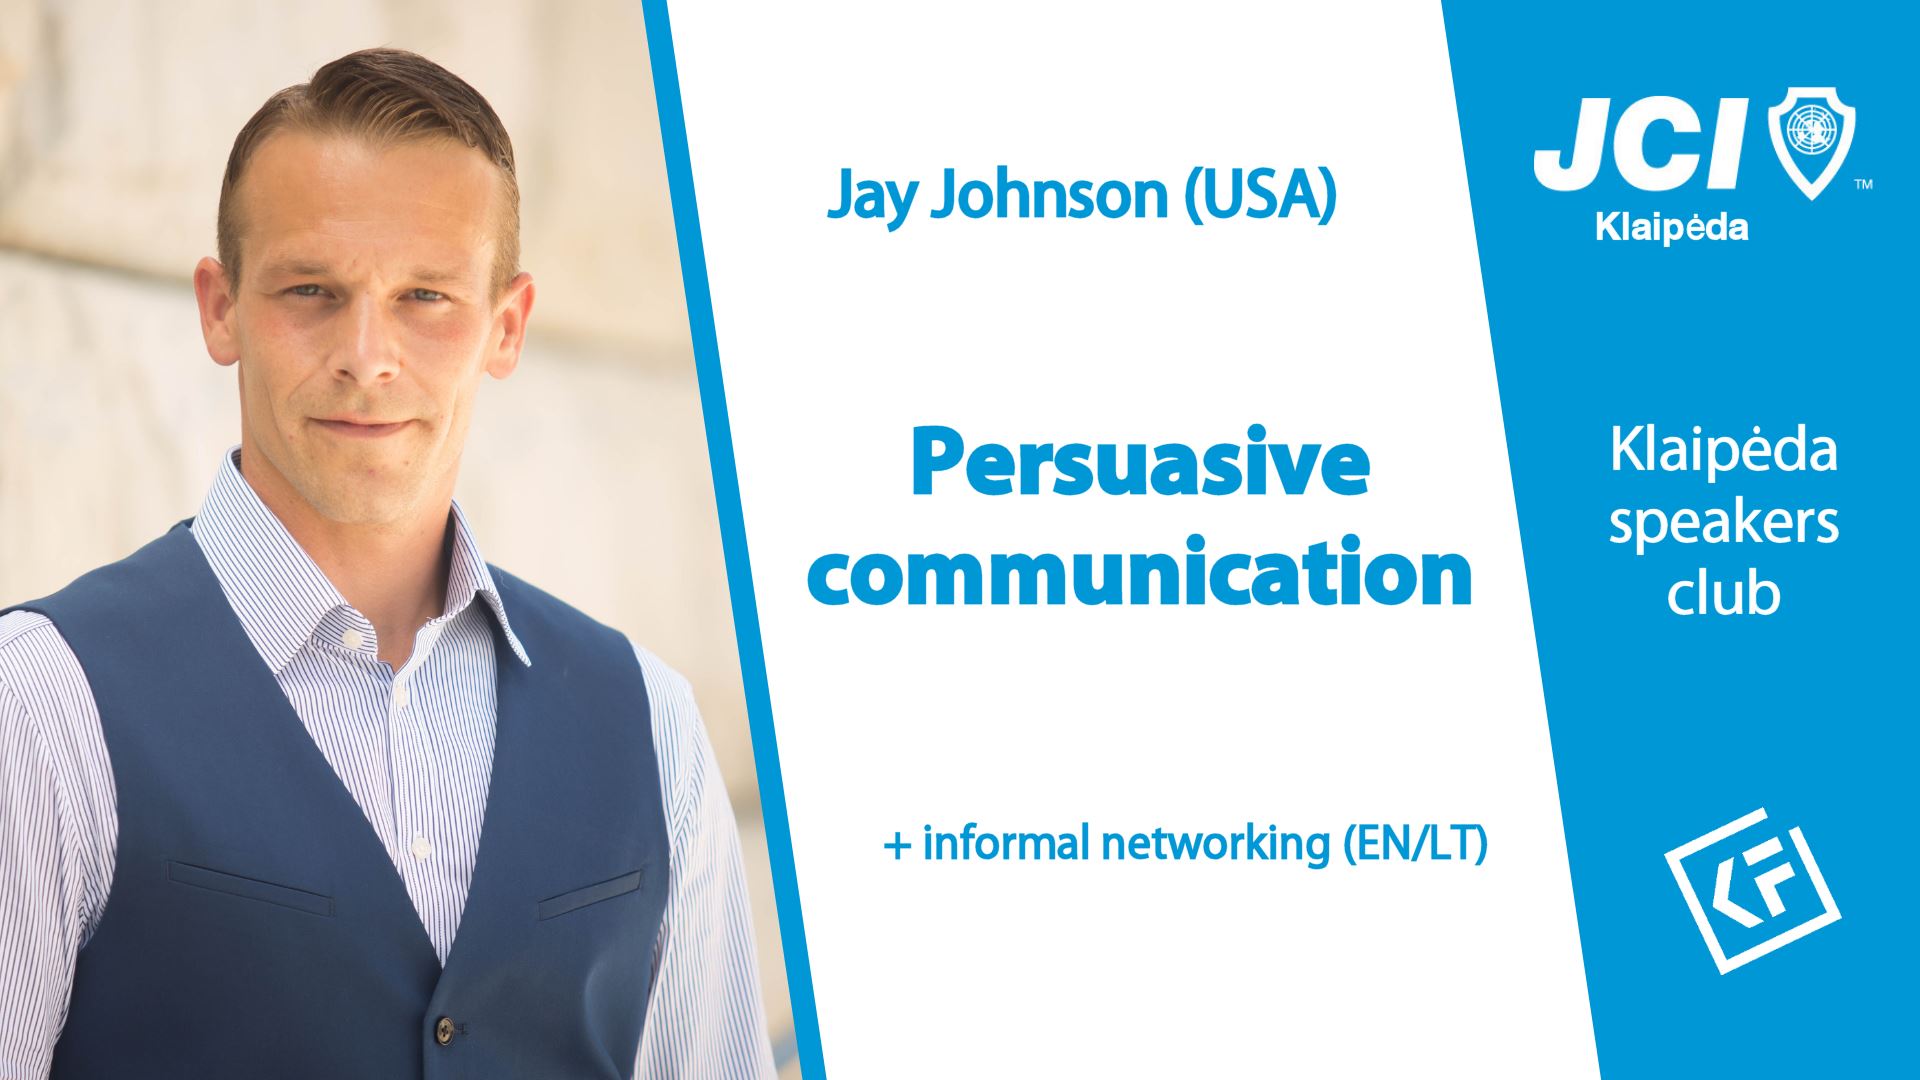 Persuasive communication – Jay Johnson (USA)